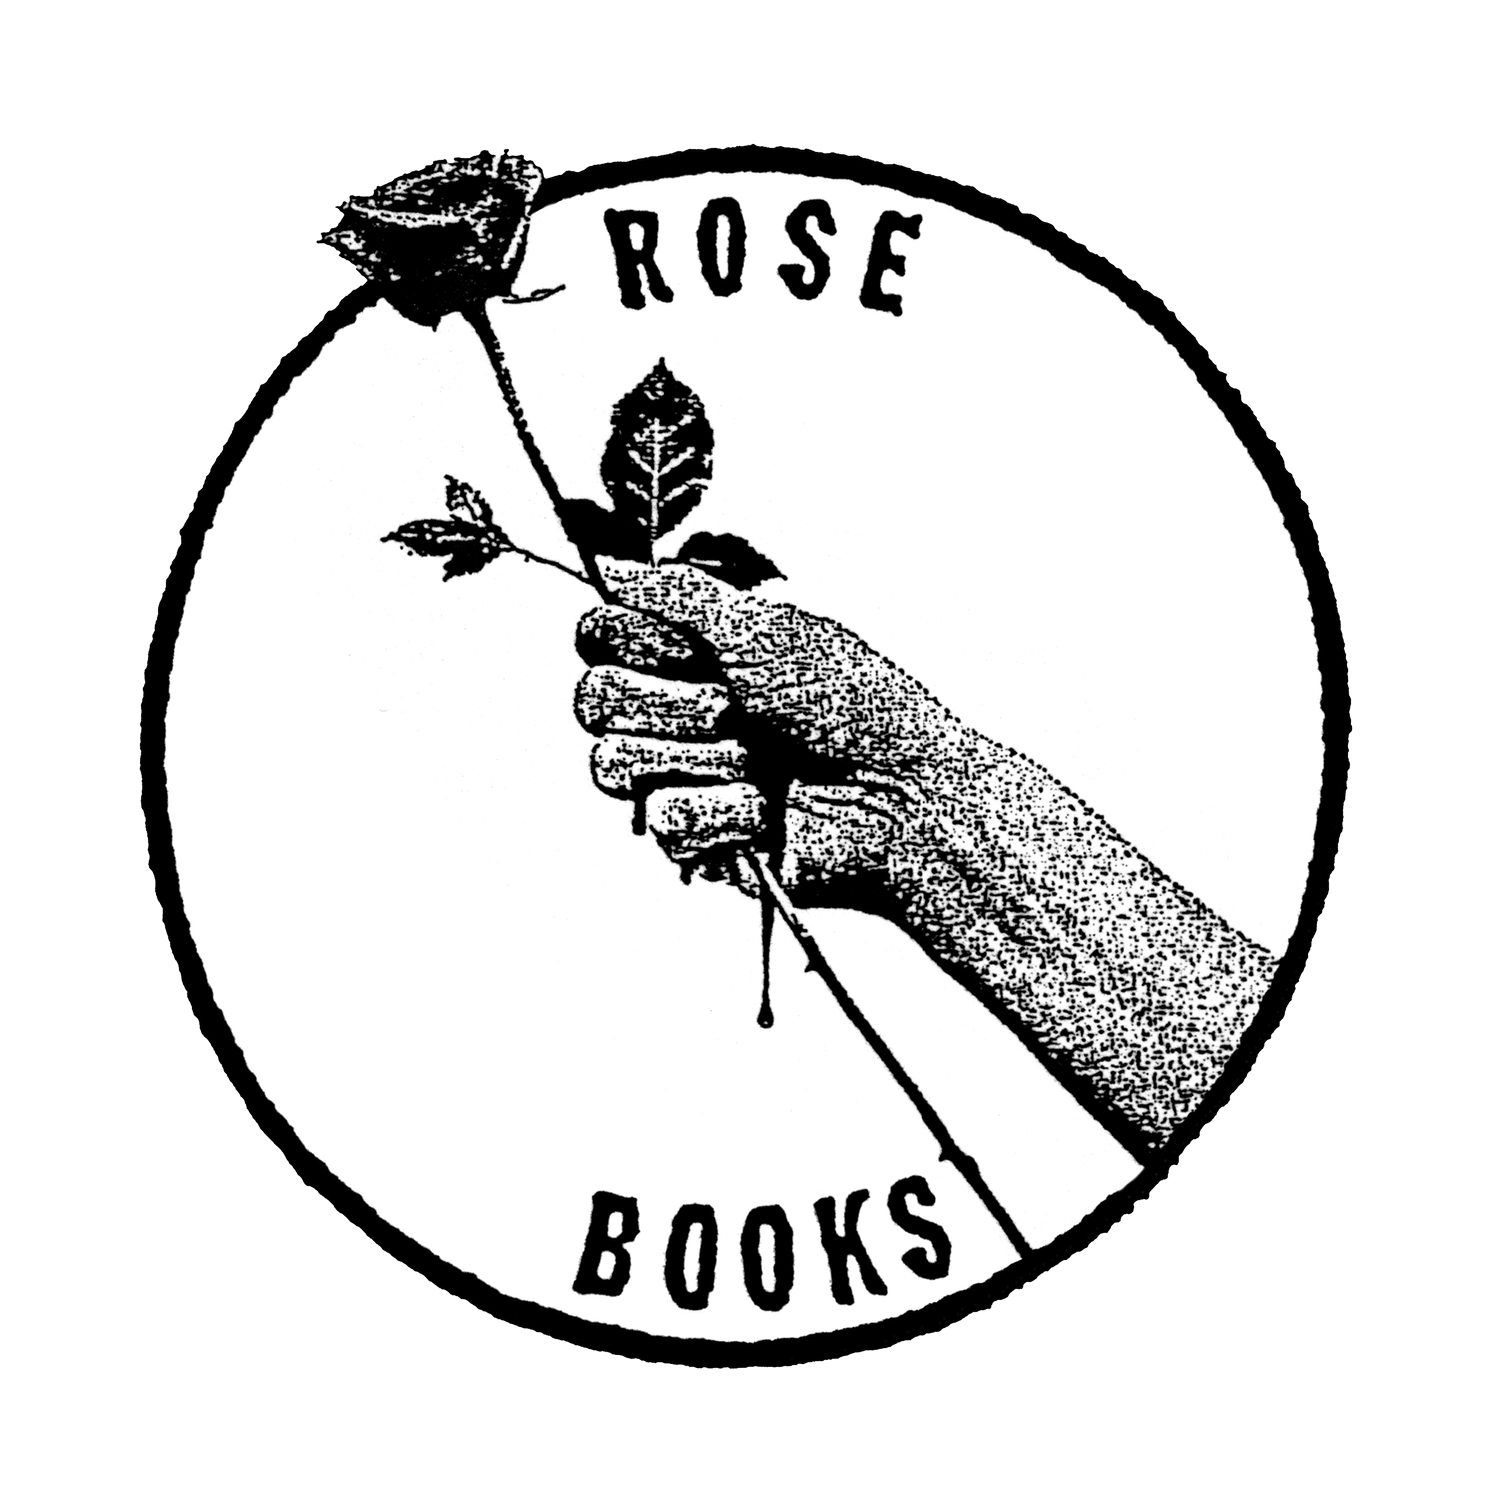 ROSE BOOKS